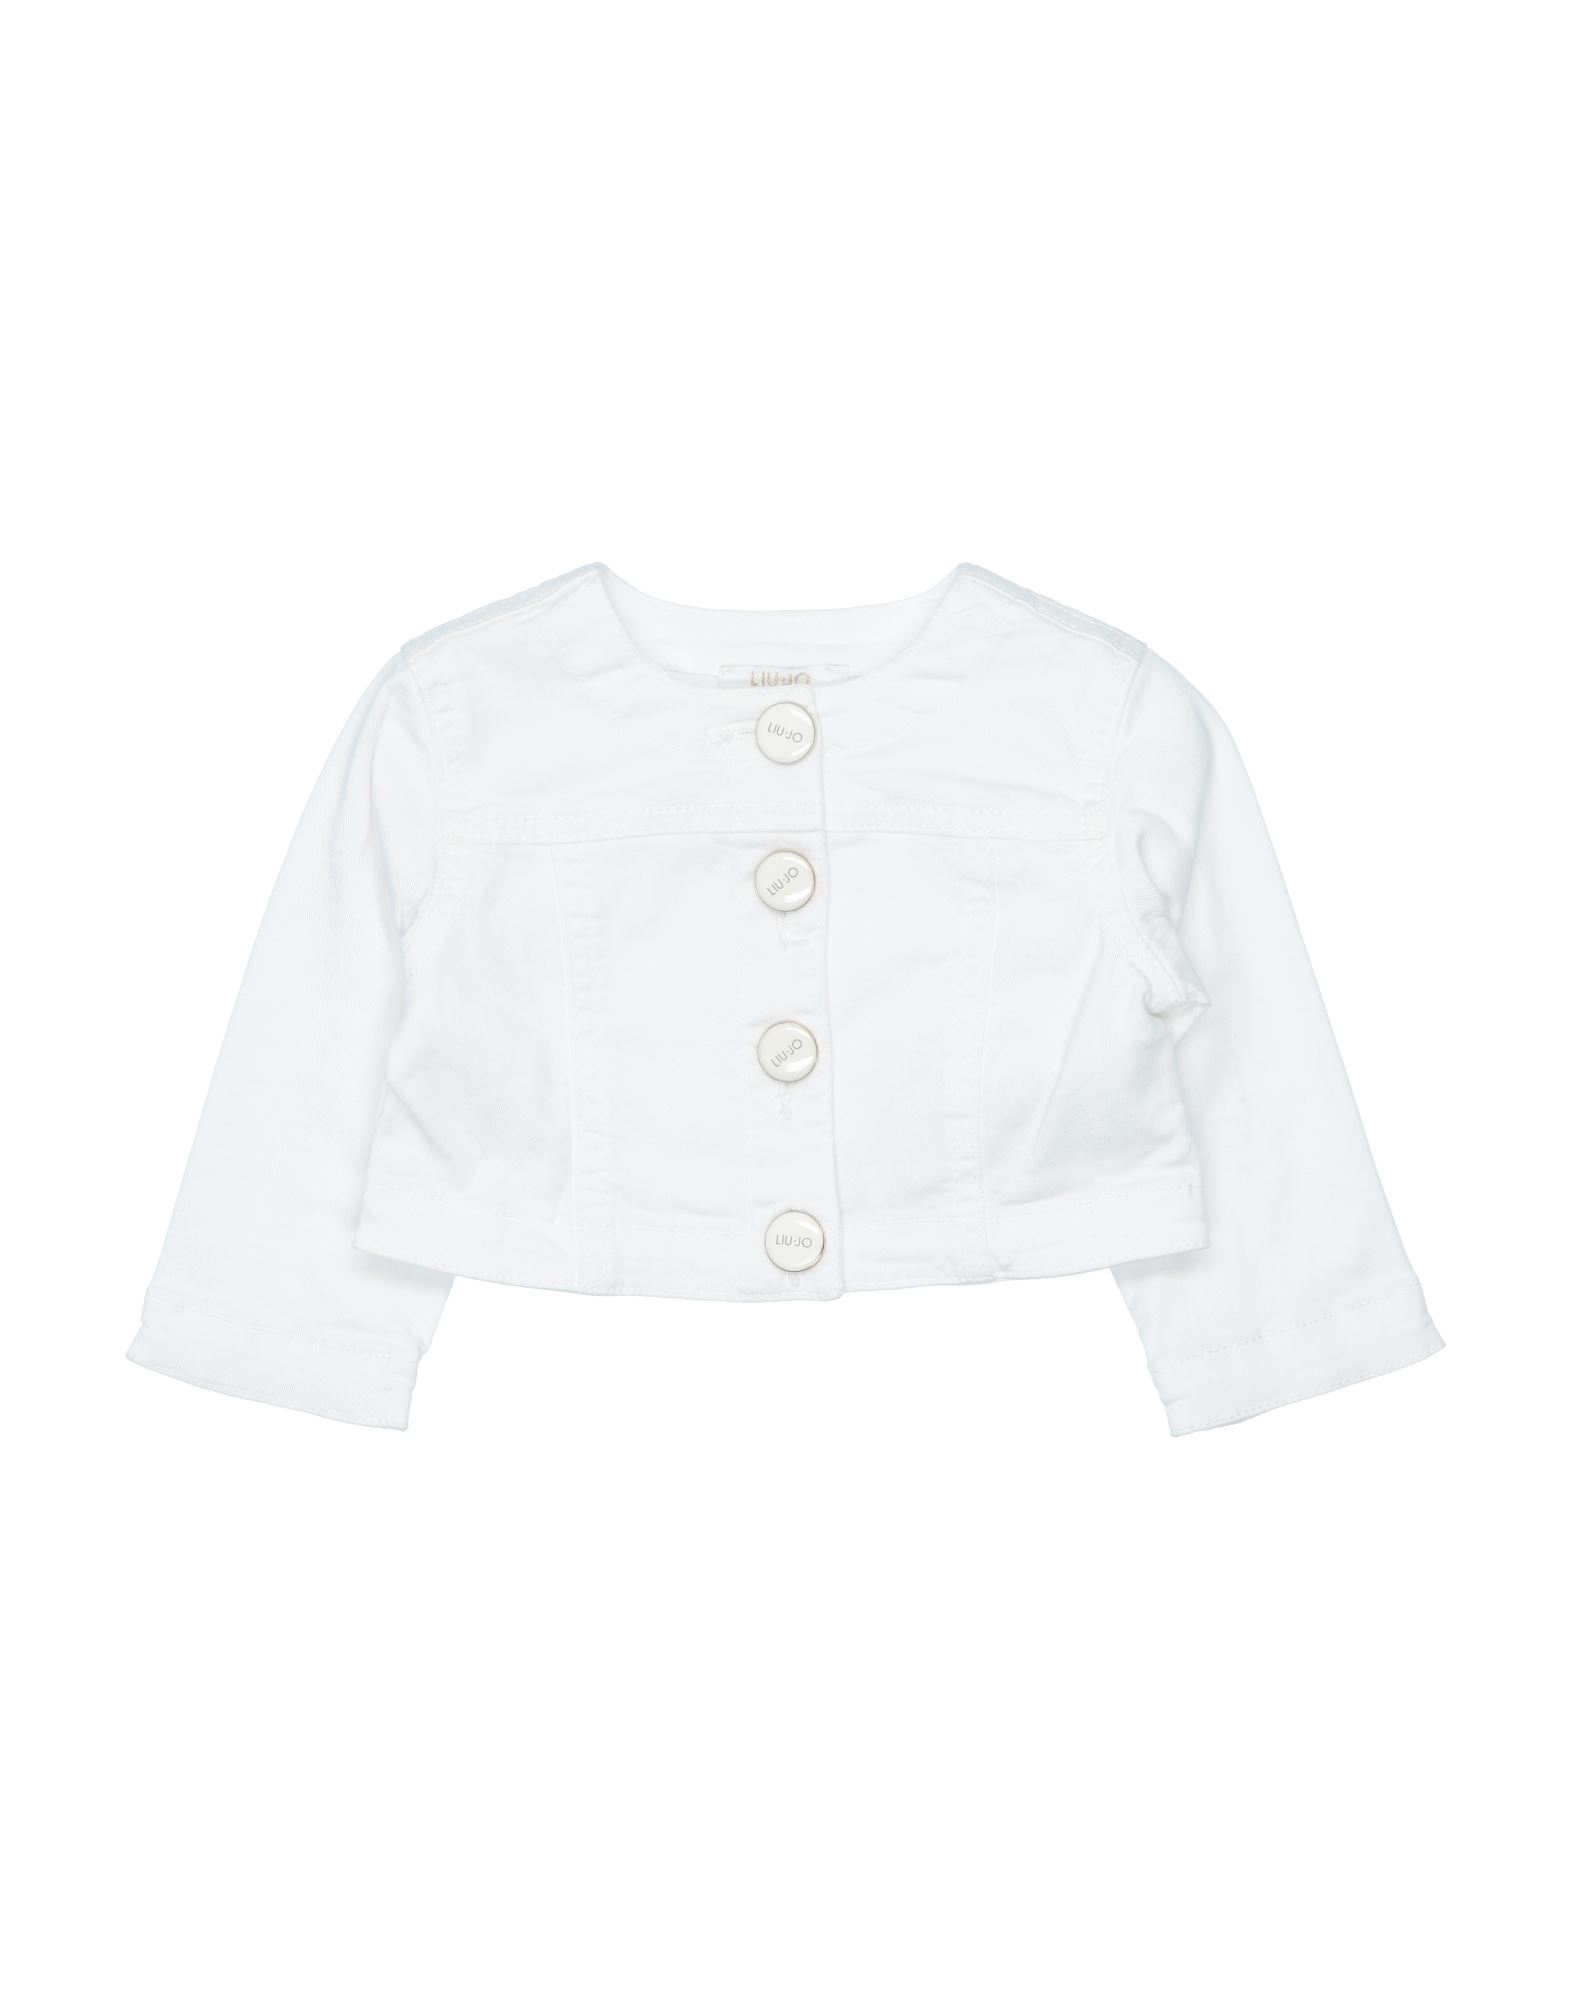 Liu •jo Kids' Jackets In White